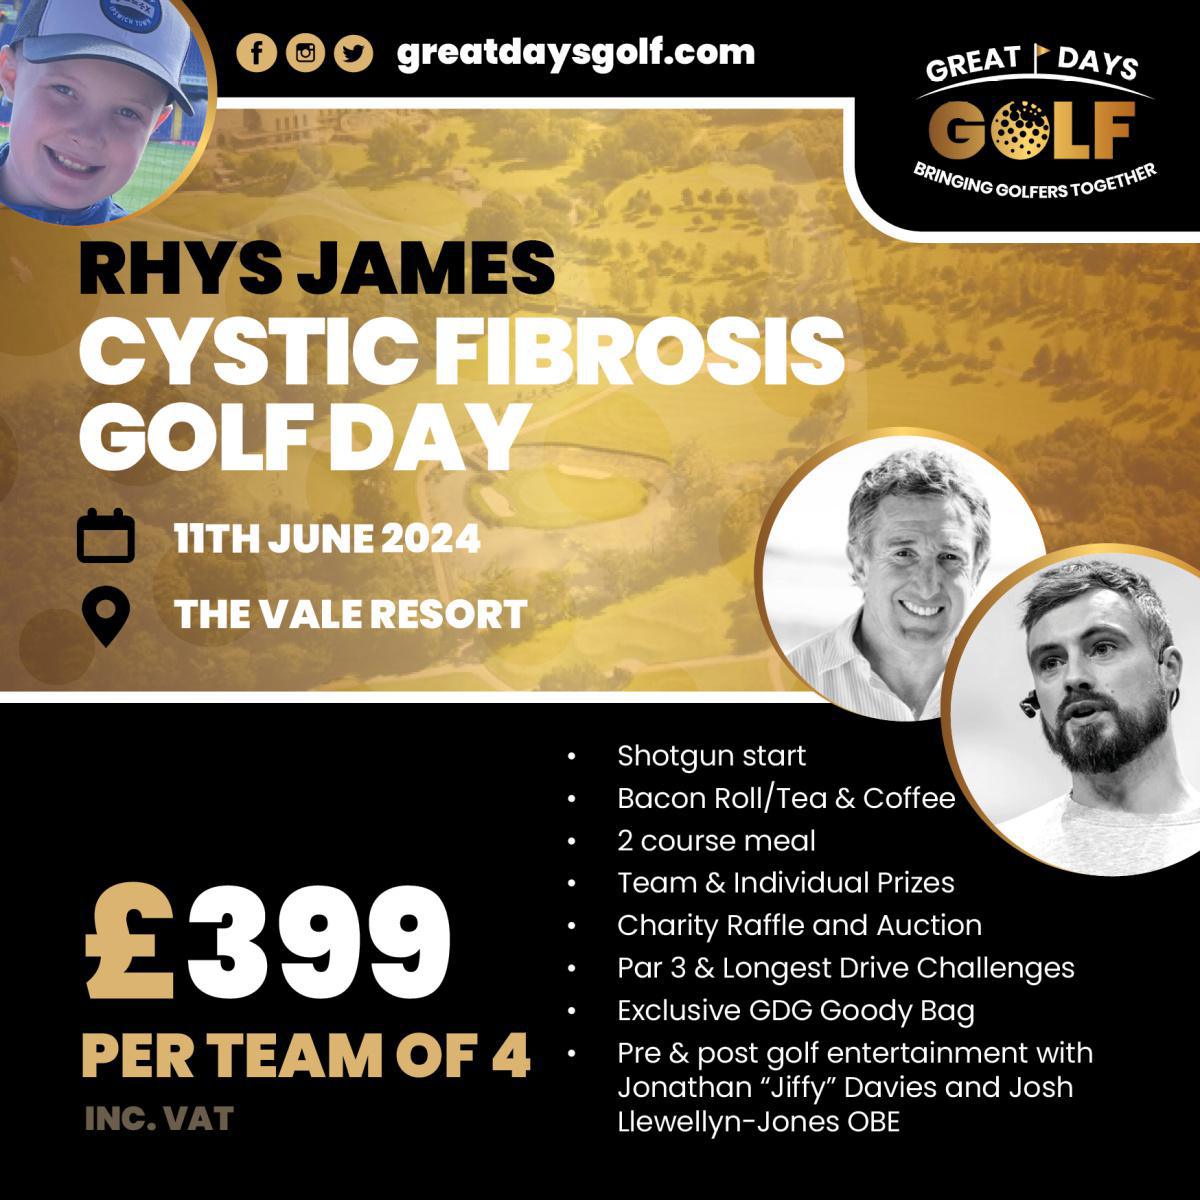 Rhys James Cystic Fibrosis Golf Day